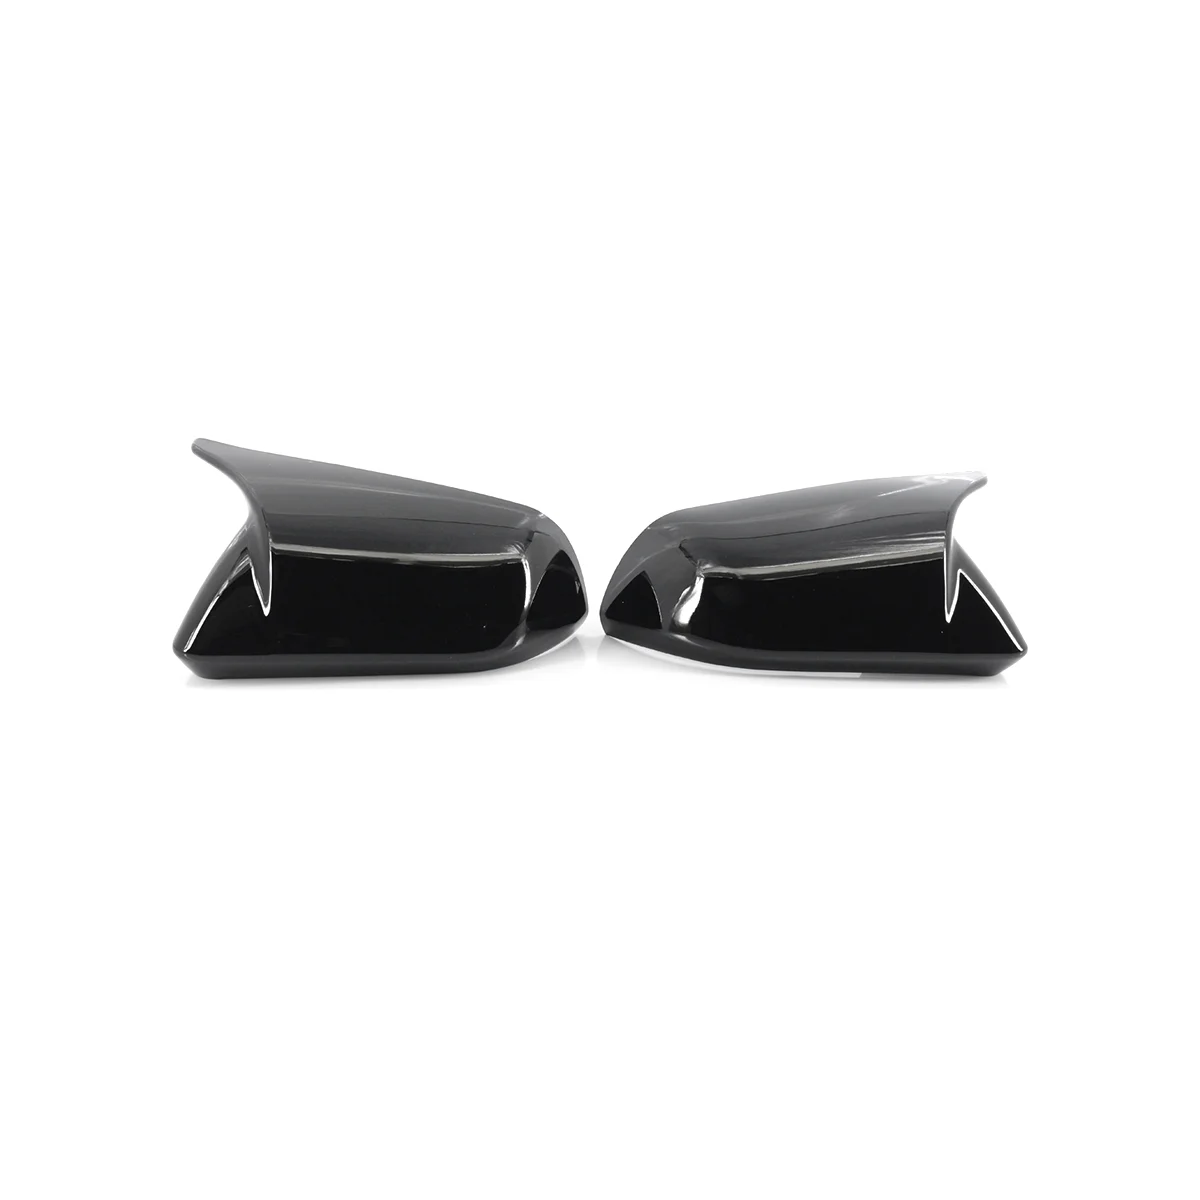 Черна Лява Дясна капачка на страничните огледала за обратно виждане за Ford Mustang 2015-2022 FR3B-17683 FR3Z-17682